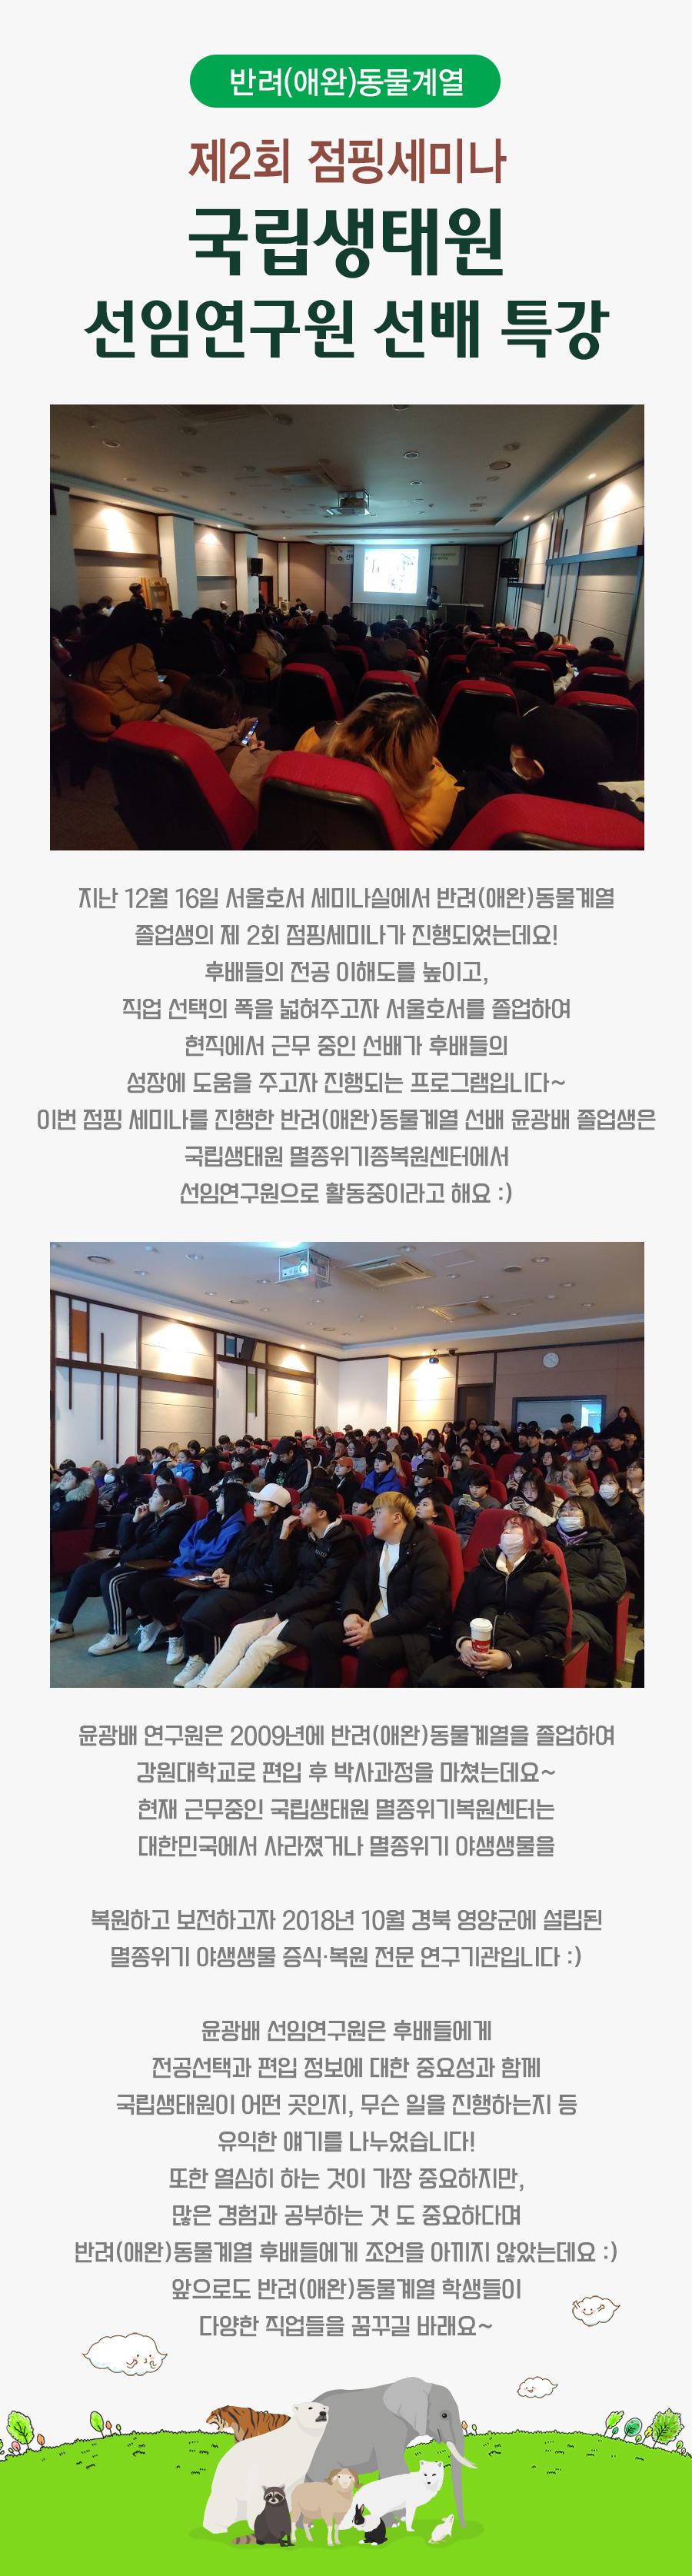 제2회 점핑세미나, 국립생태원 선임연구원 선배 특강